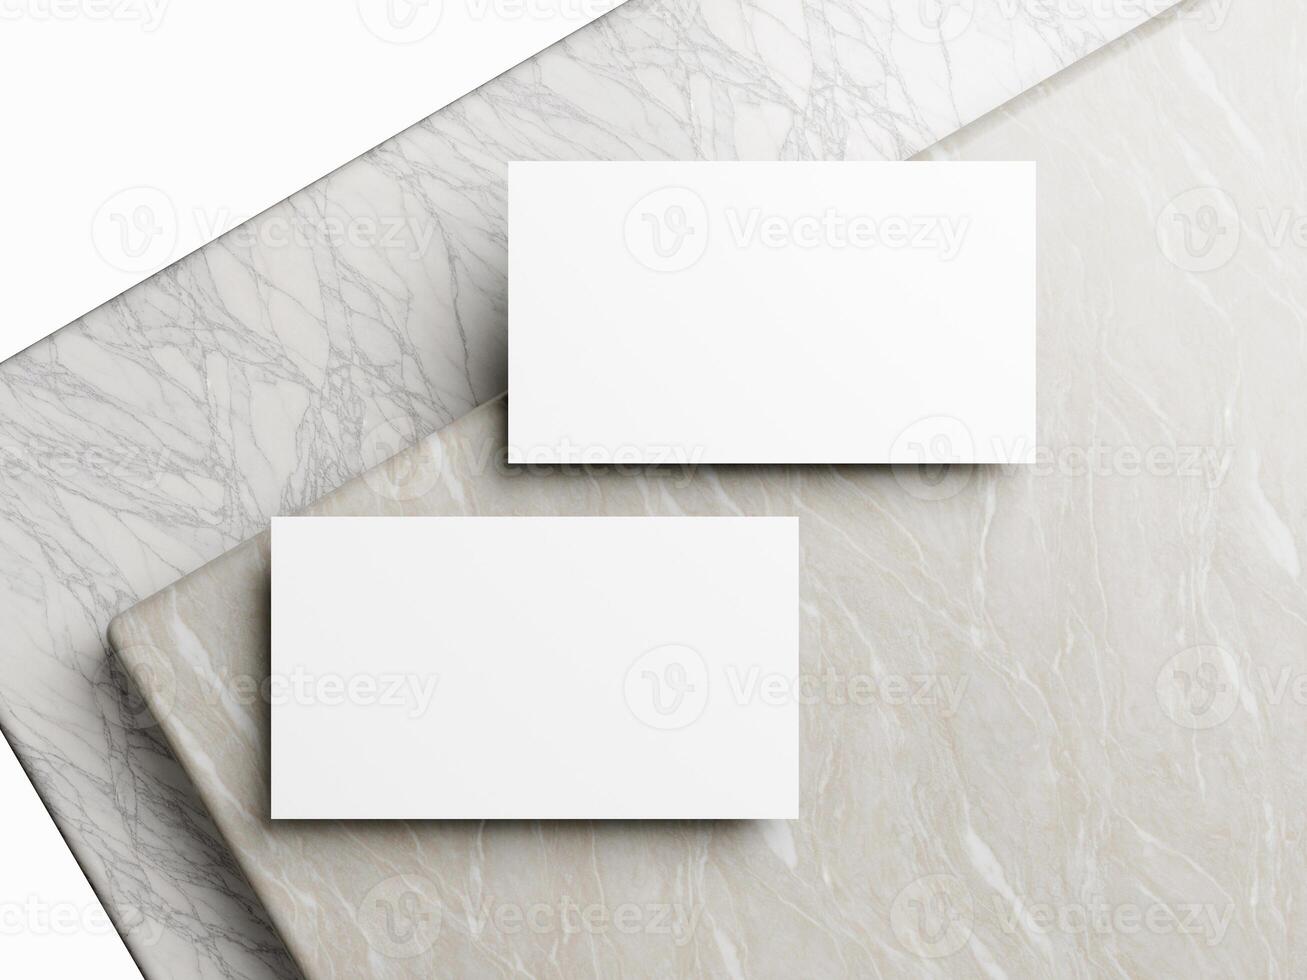 Vide blanc affaires carte maquette sur marbre Contexte 3d rendre illustration pour moquer en haut et conception présentation. photo